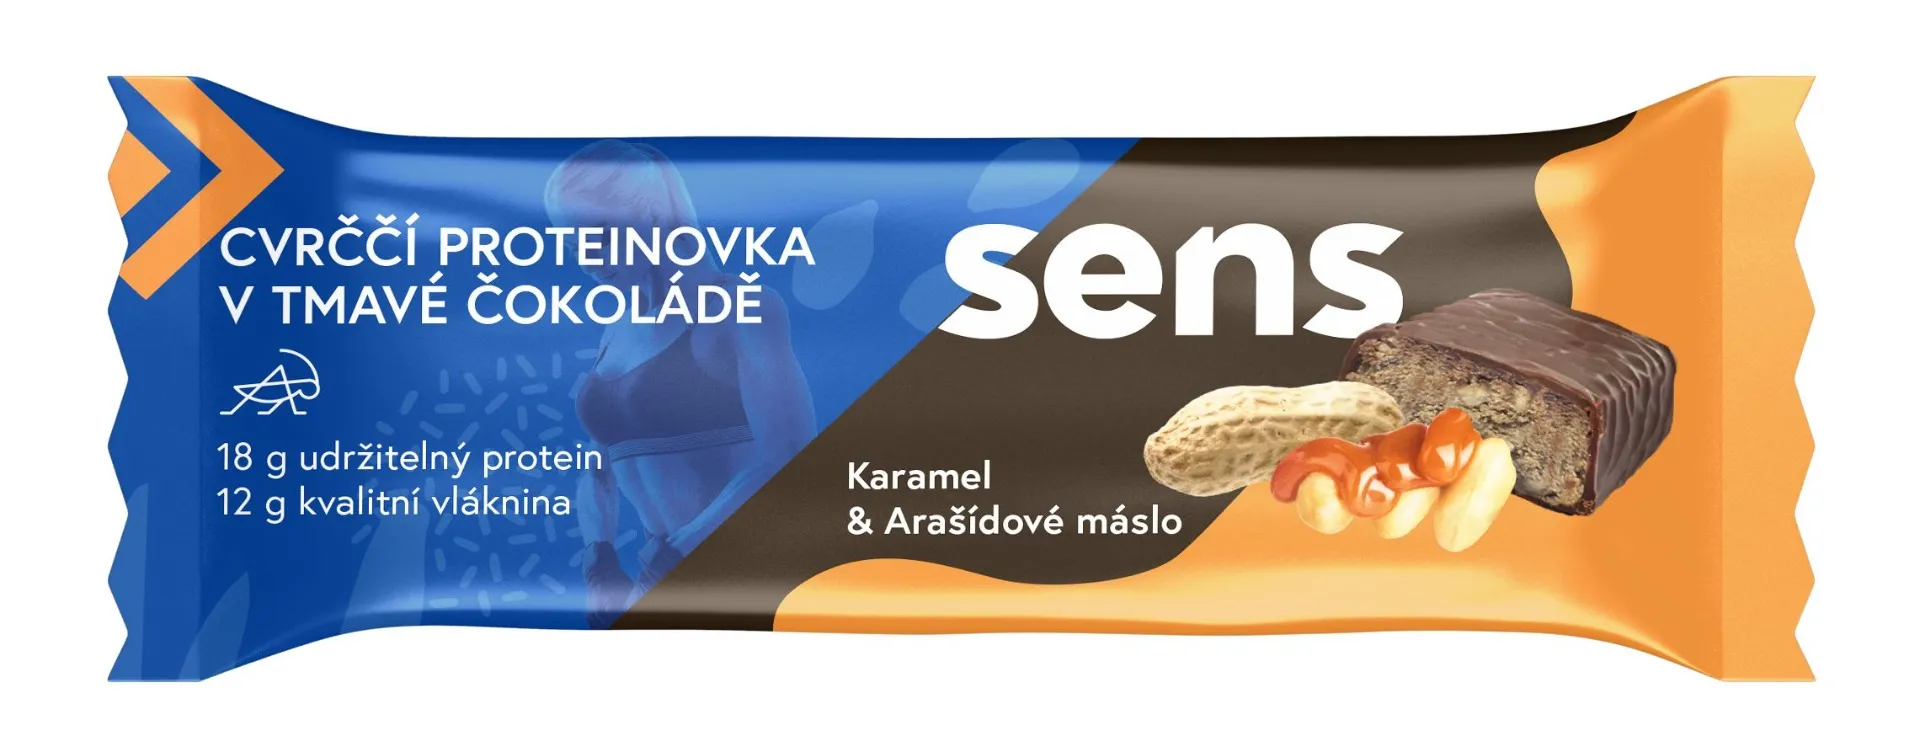 SENS Cvrččí proteinovka v tmavé čokoládě Karamel & Arašídové máslo 60 g